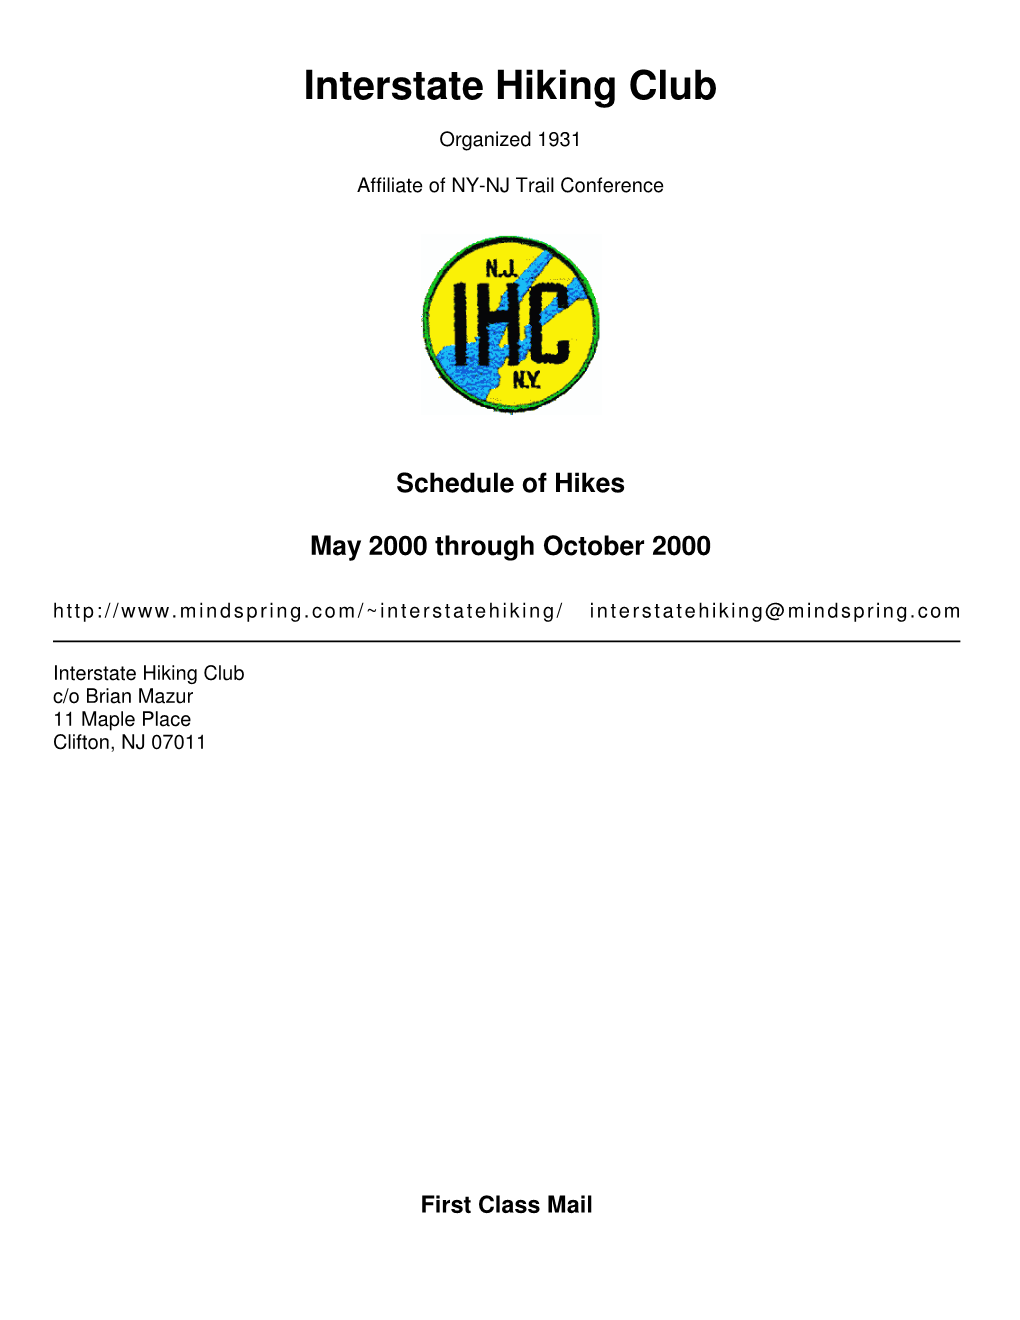 IHC May 2000